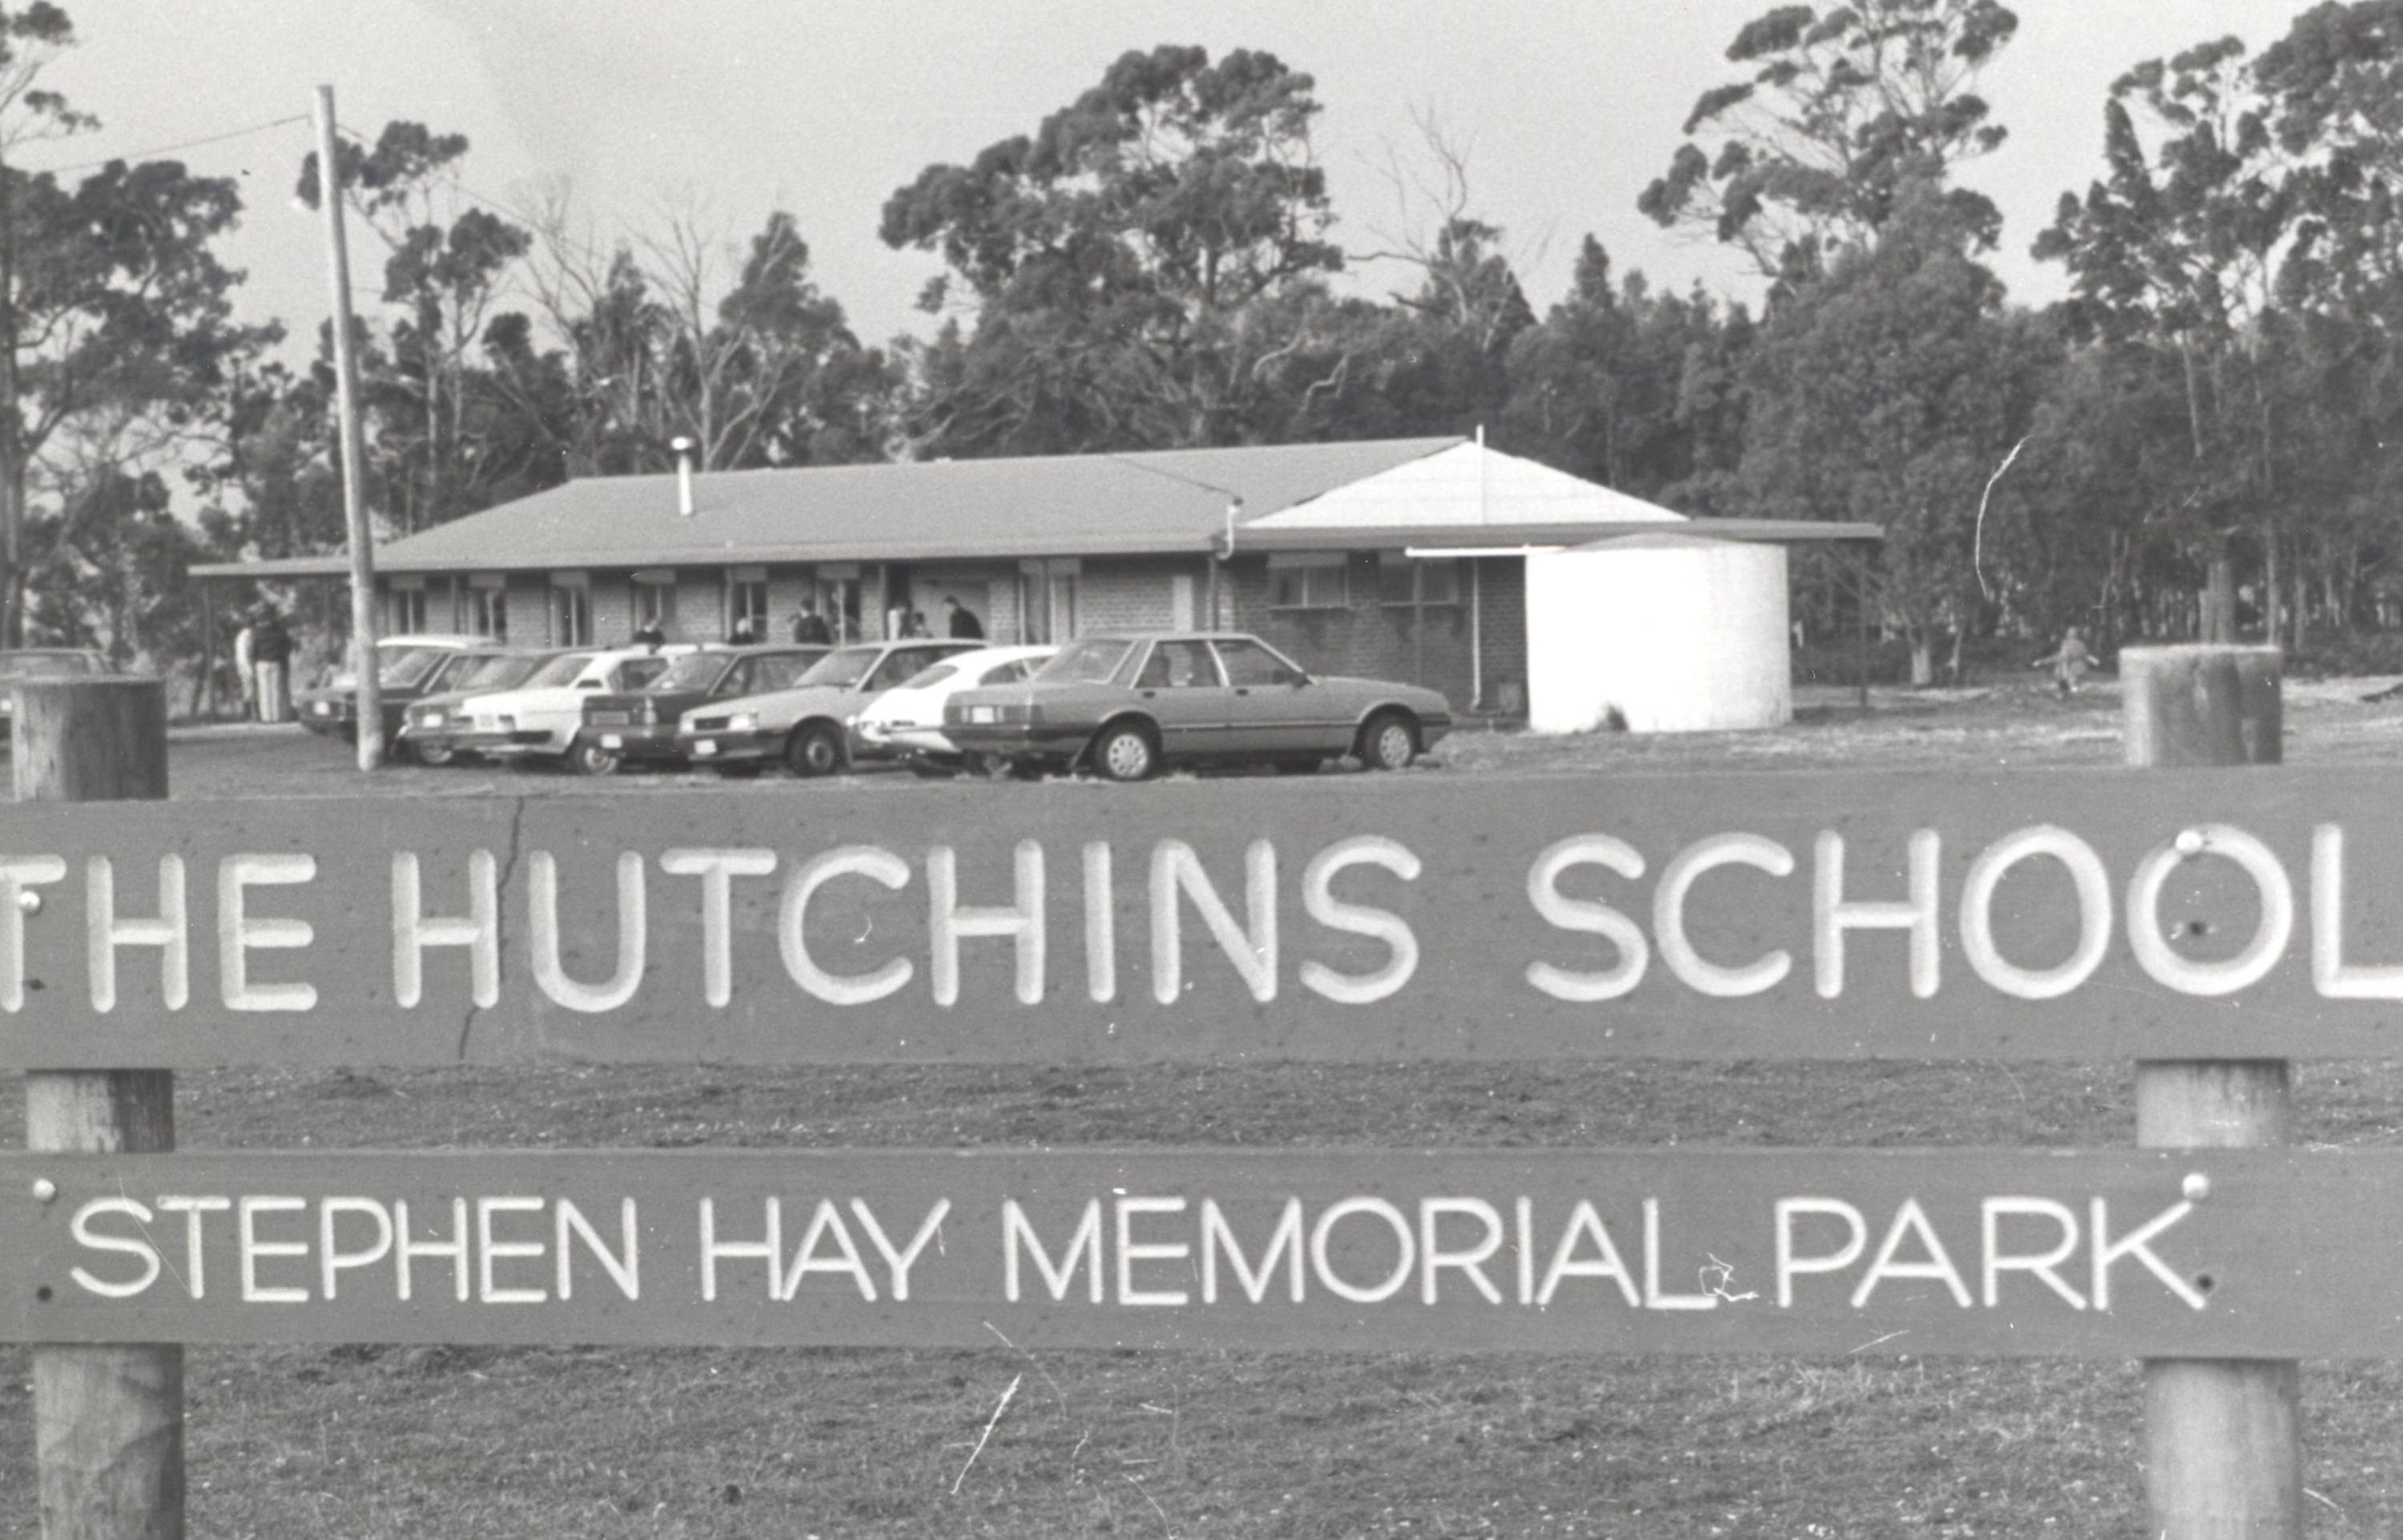 Stephen Hay Memorial Park opening, 1987.